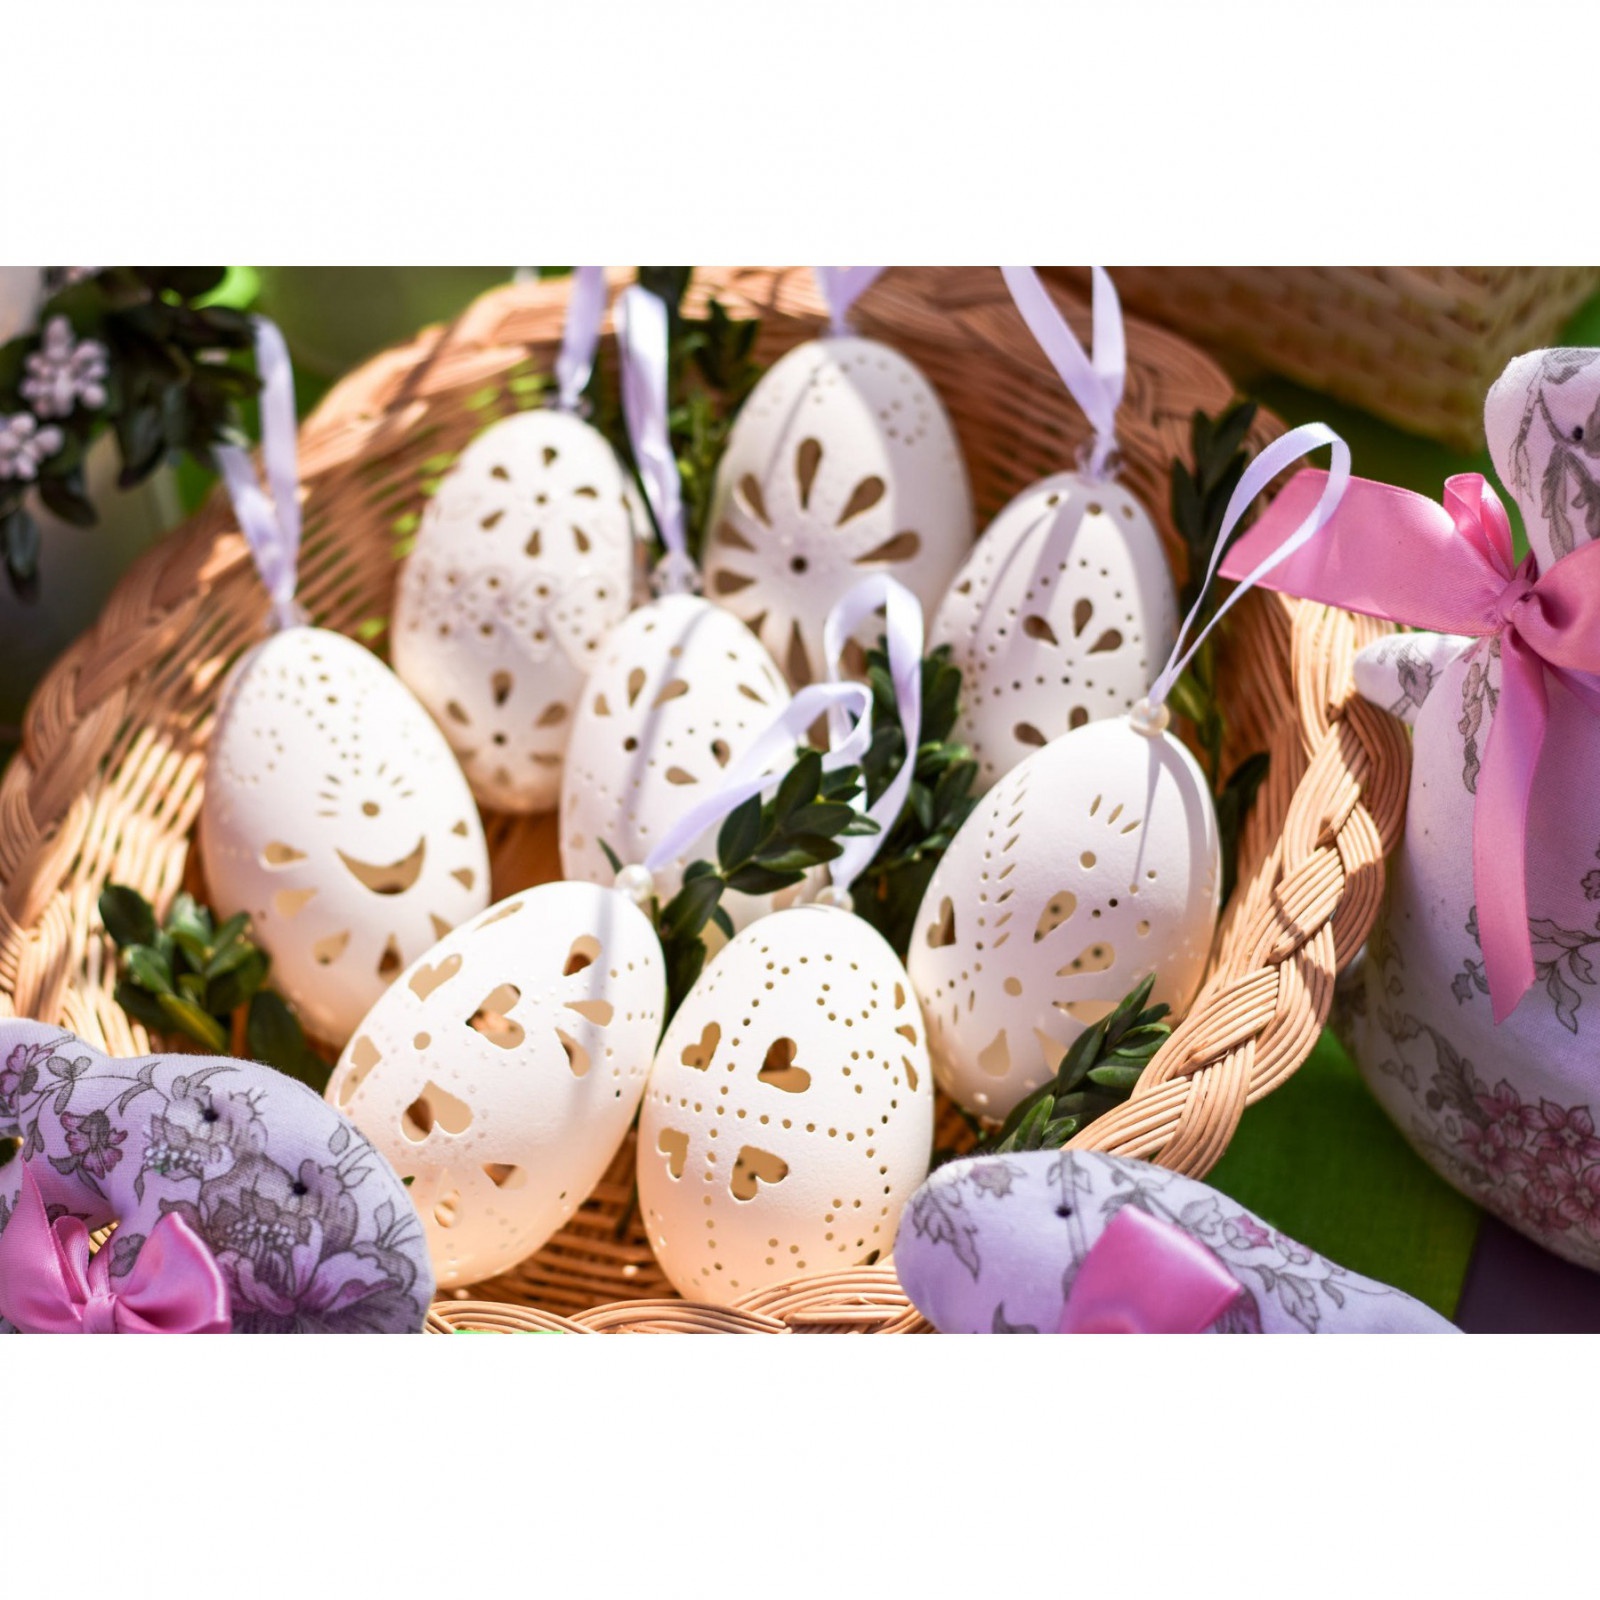 skořápky kachních vajec vyfouknuté 10ks na zdobení velikonoční vajíčka kraslice megamix.shop